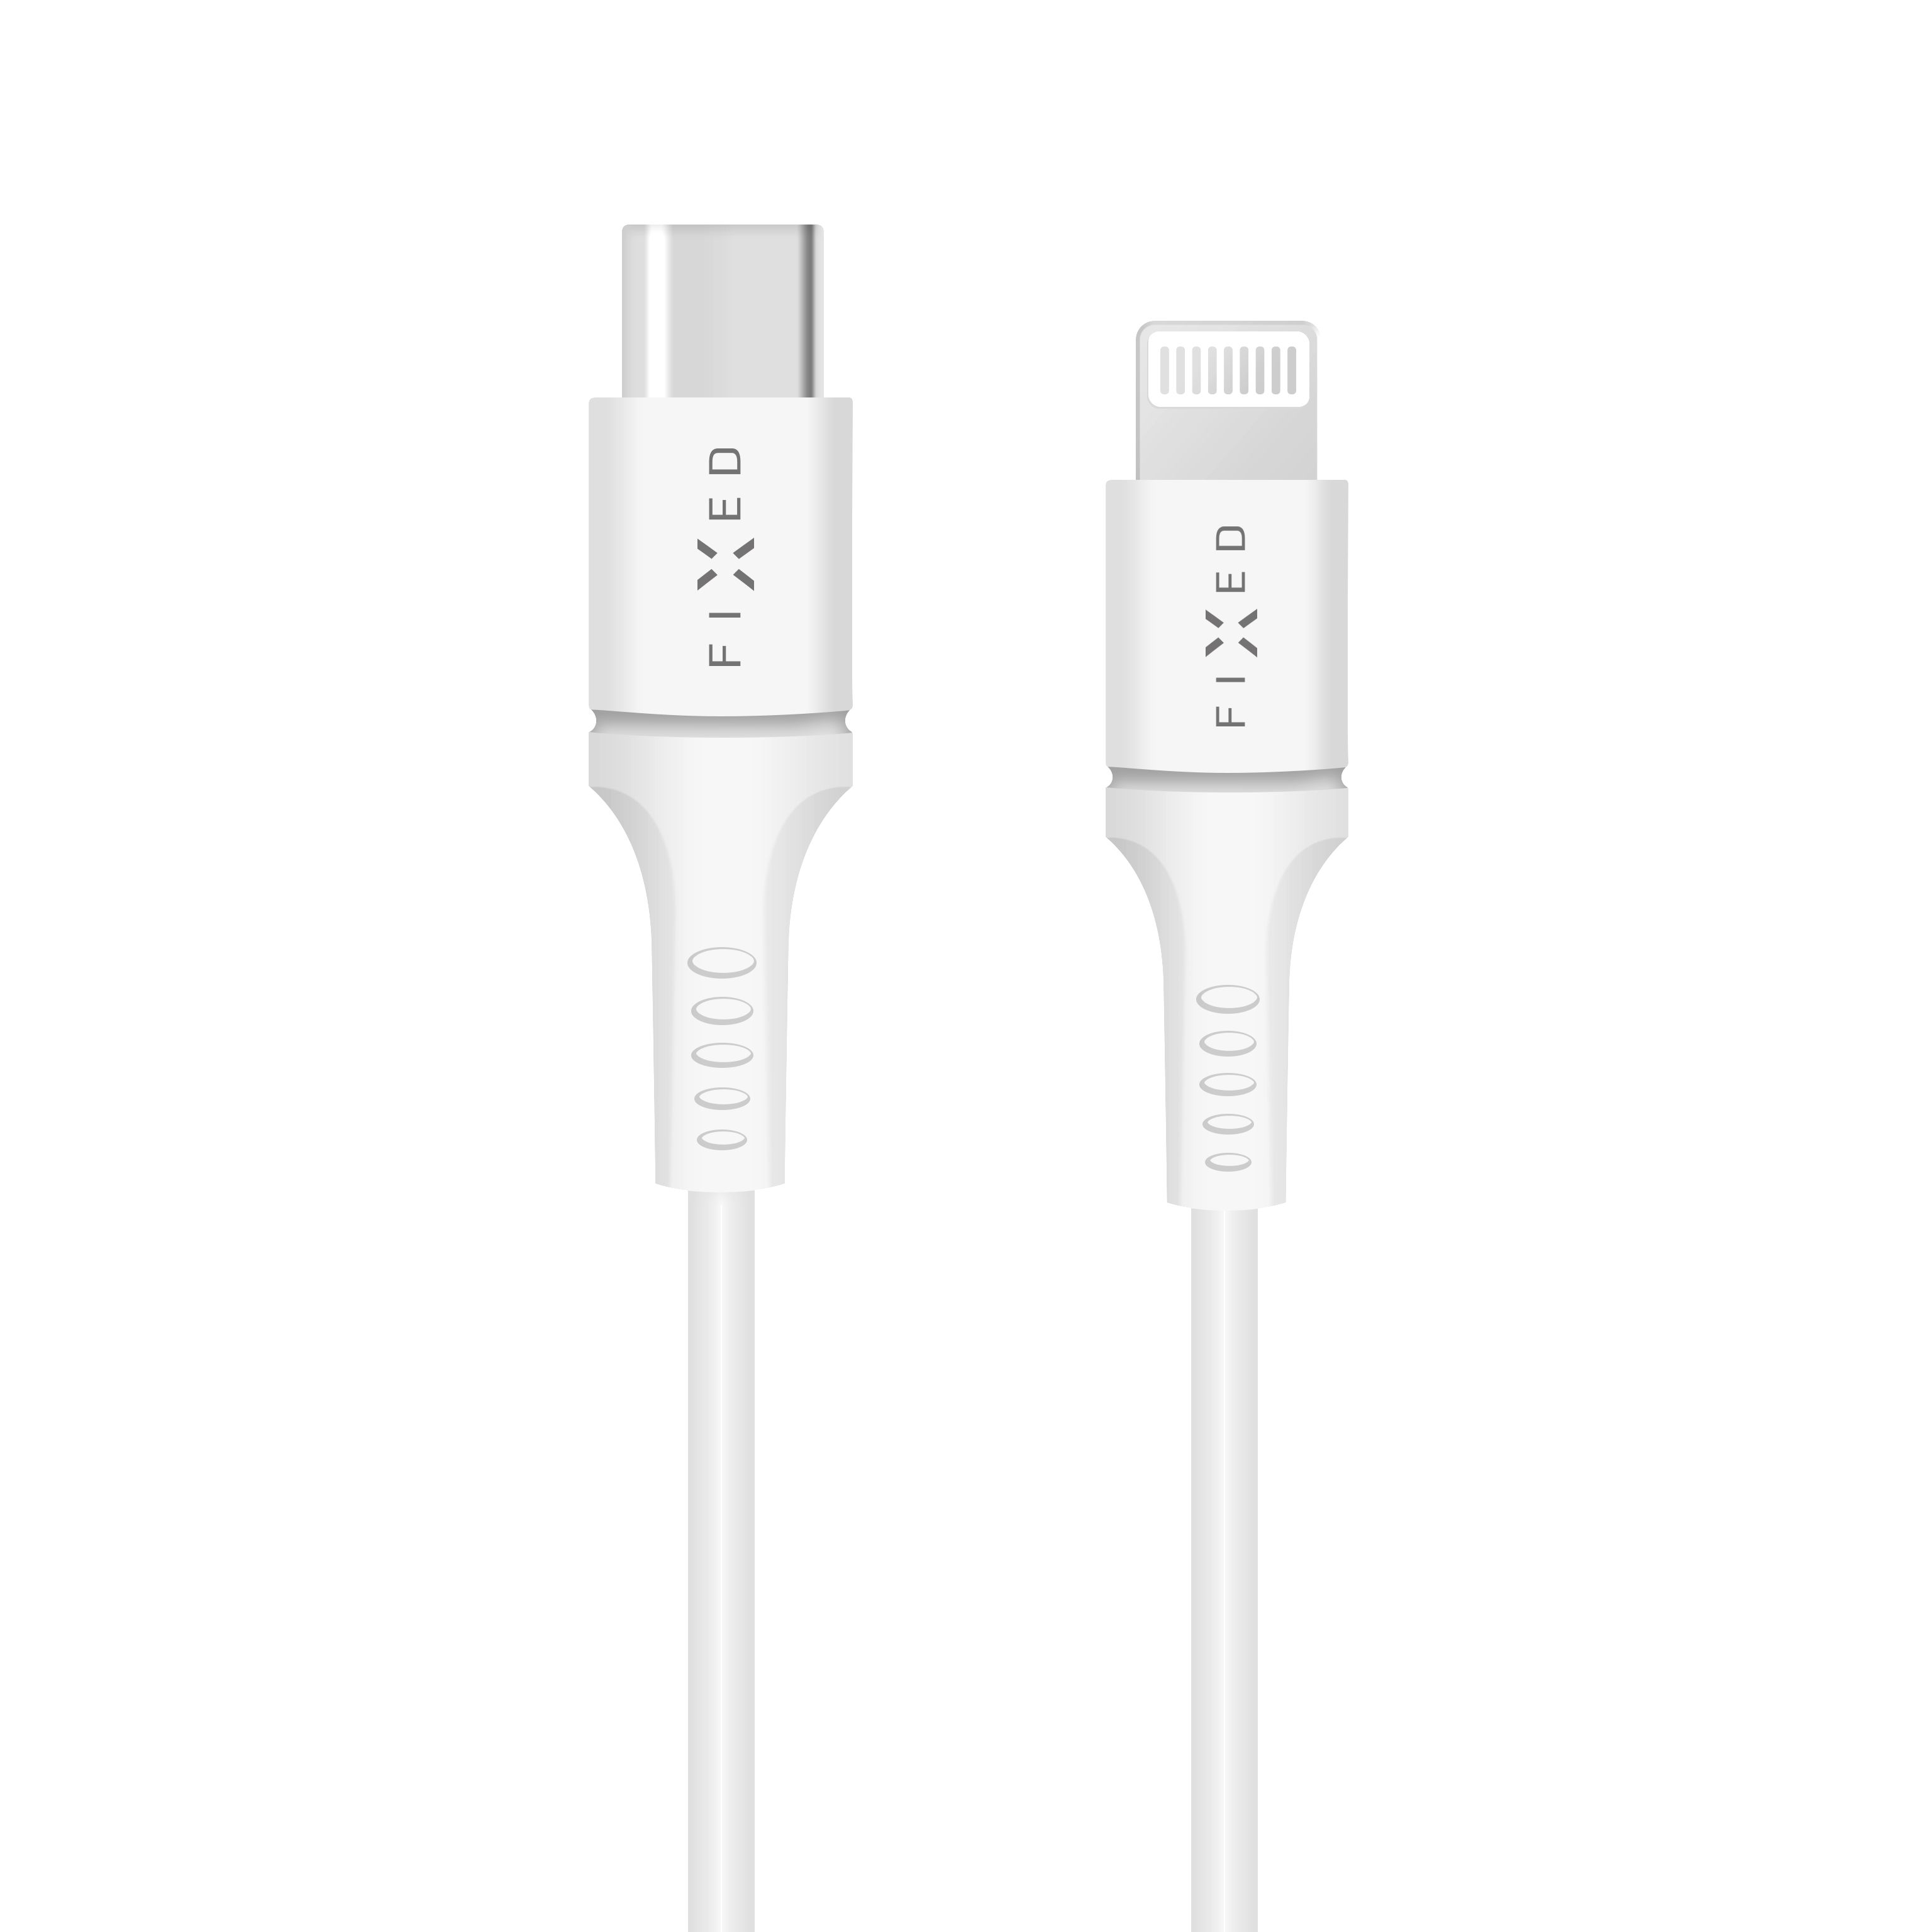 Dlouhý datový a nabíjecí kabel s konektory USB-C/Lightning a podporou PD, 2 metry, MFI certifikace, bílý